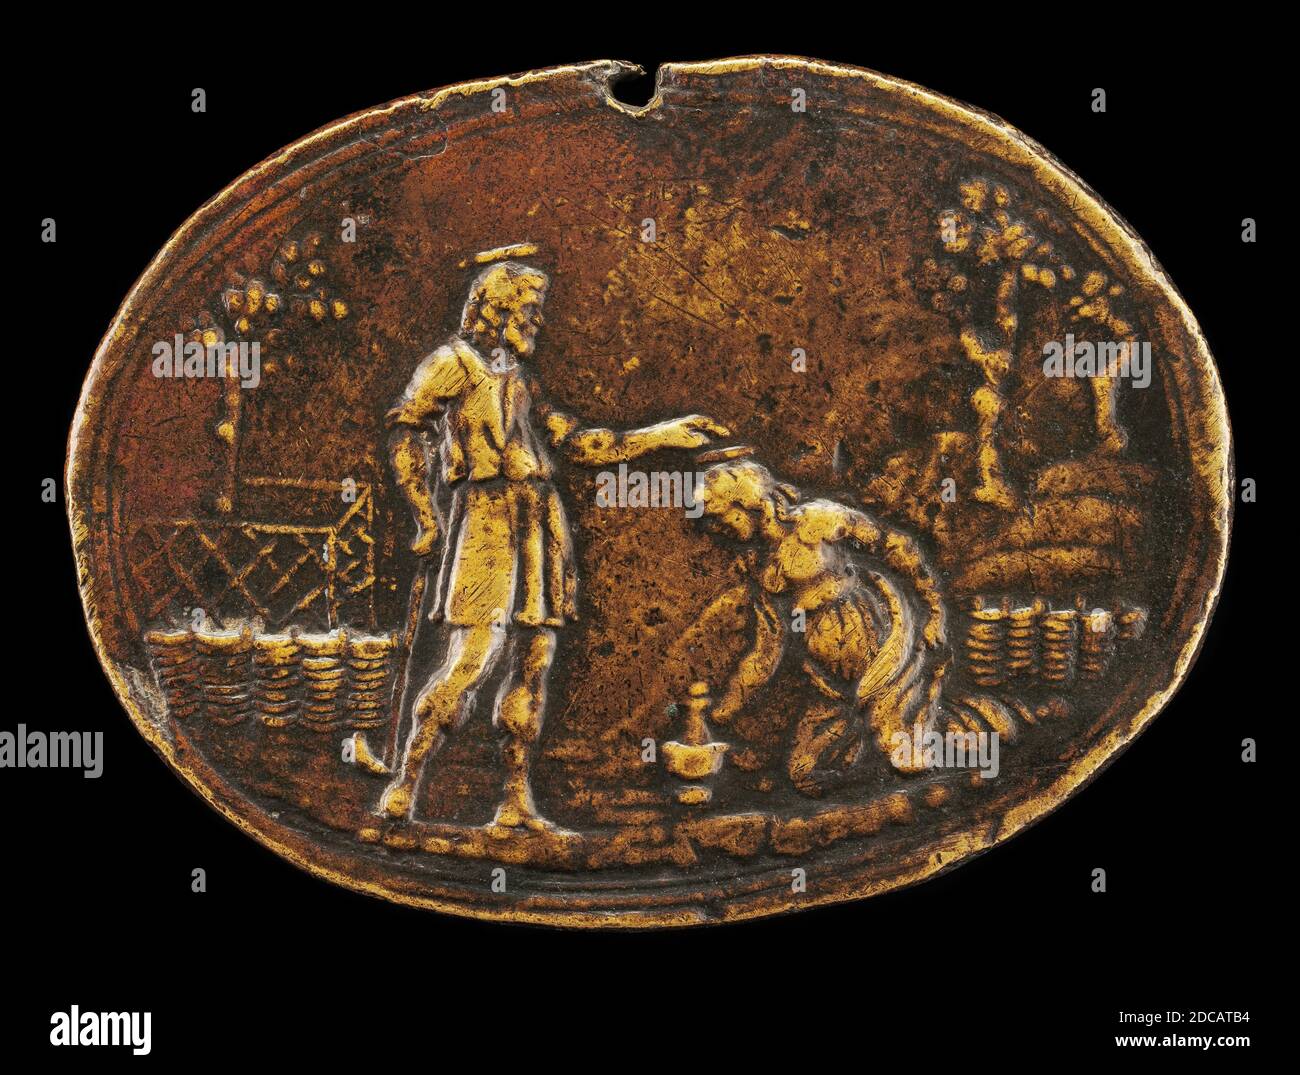 Valerio belli, (artista), Italiano, 1468 - 1546, Noli Me Tangere, patina bruna media/bronzo (sfregata sulle figure), tuta (ovale): 4 x 5.4 cm (1 9/16 x 2 1/8 in.) peso lordo: 30 gr Foto Stock